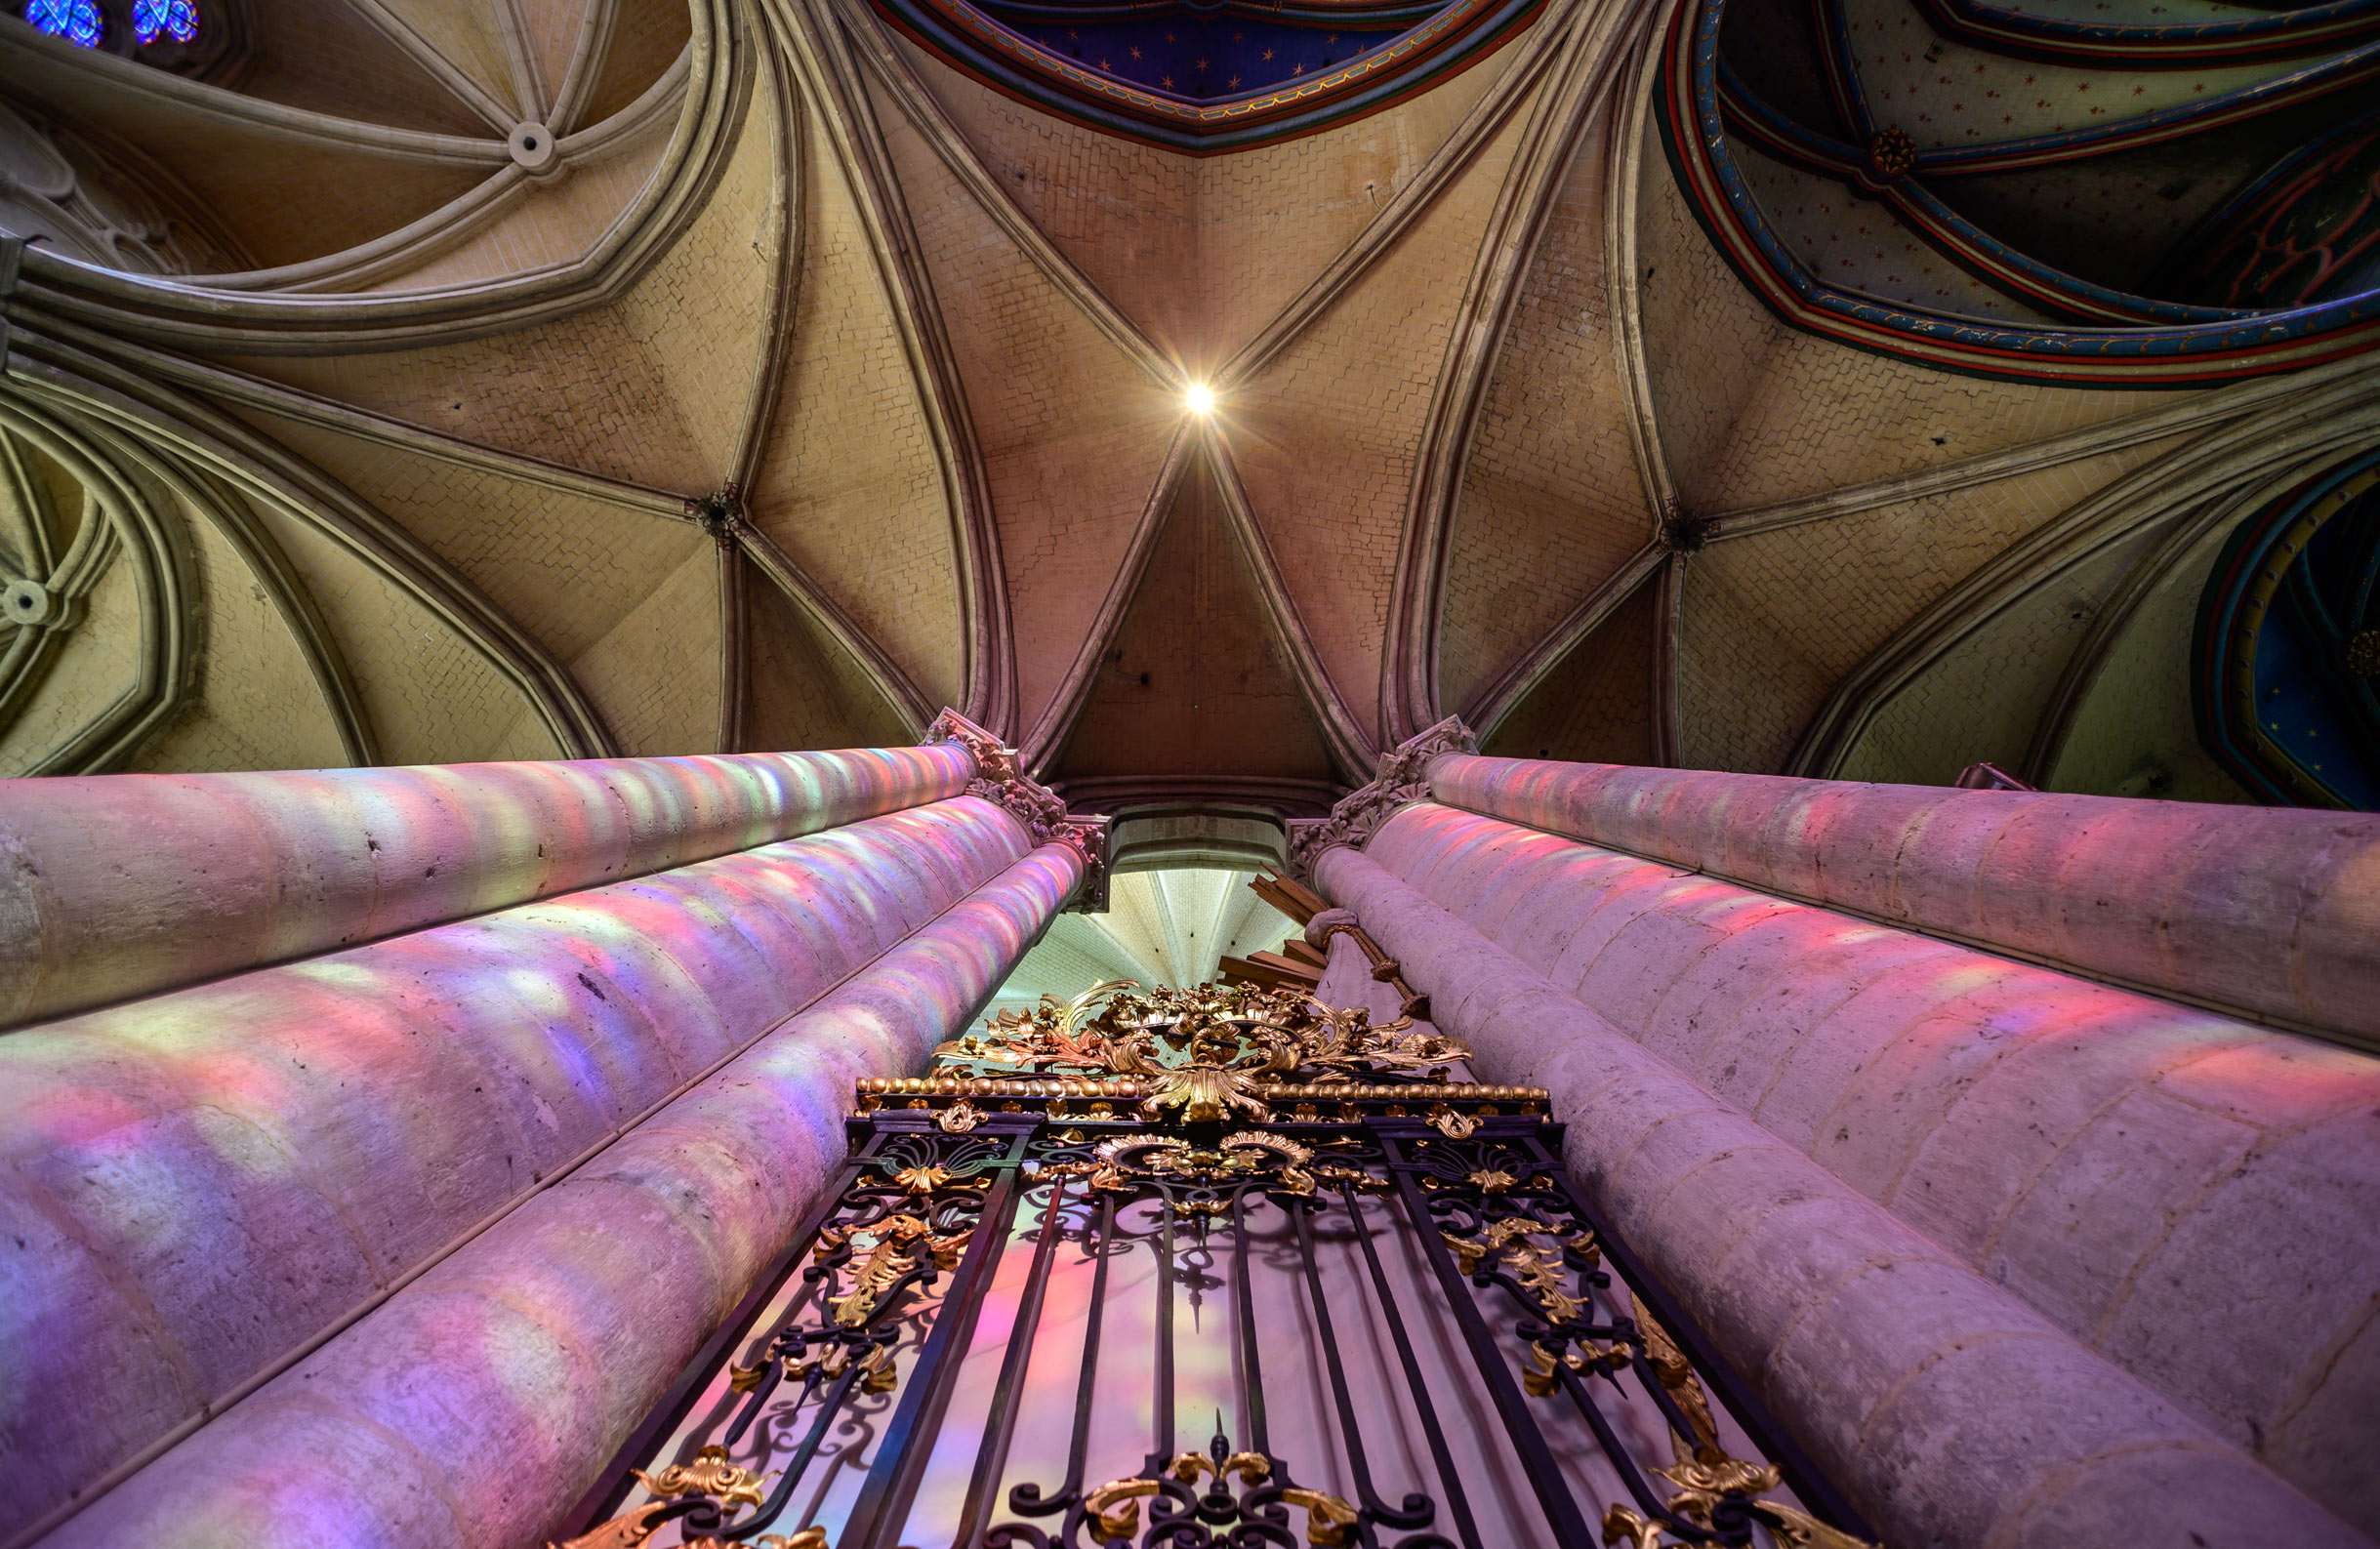 La cathédrale d'Amiens